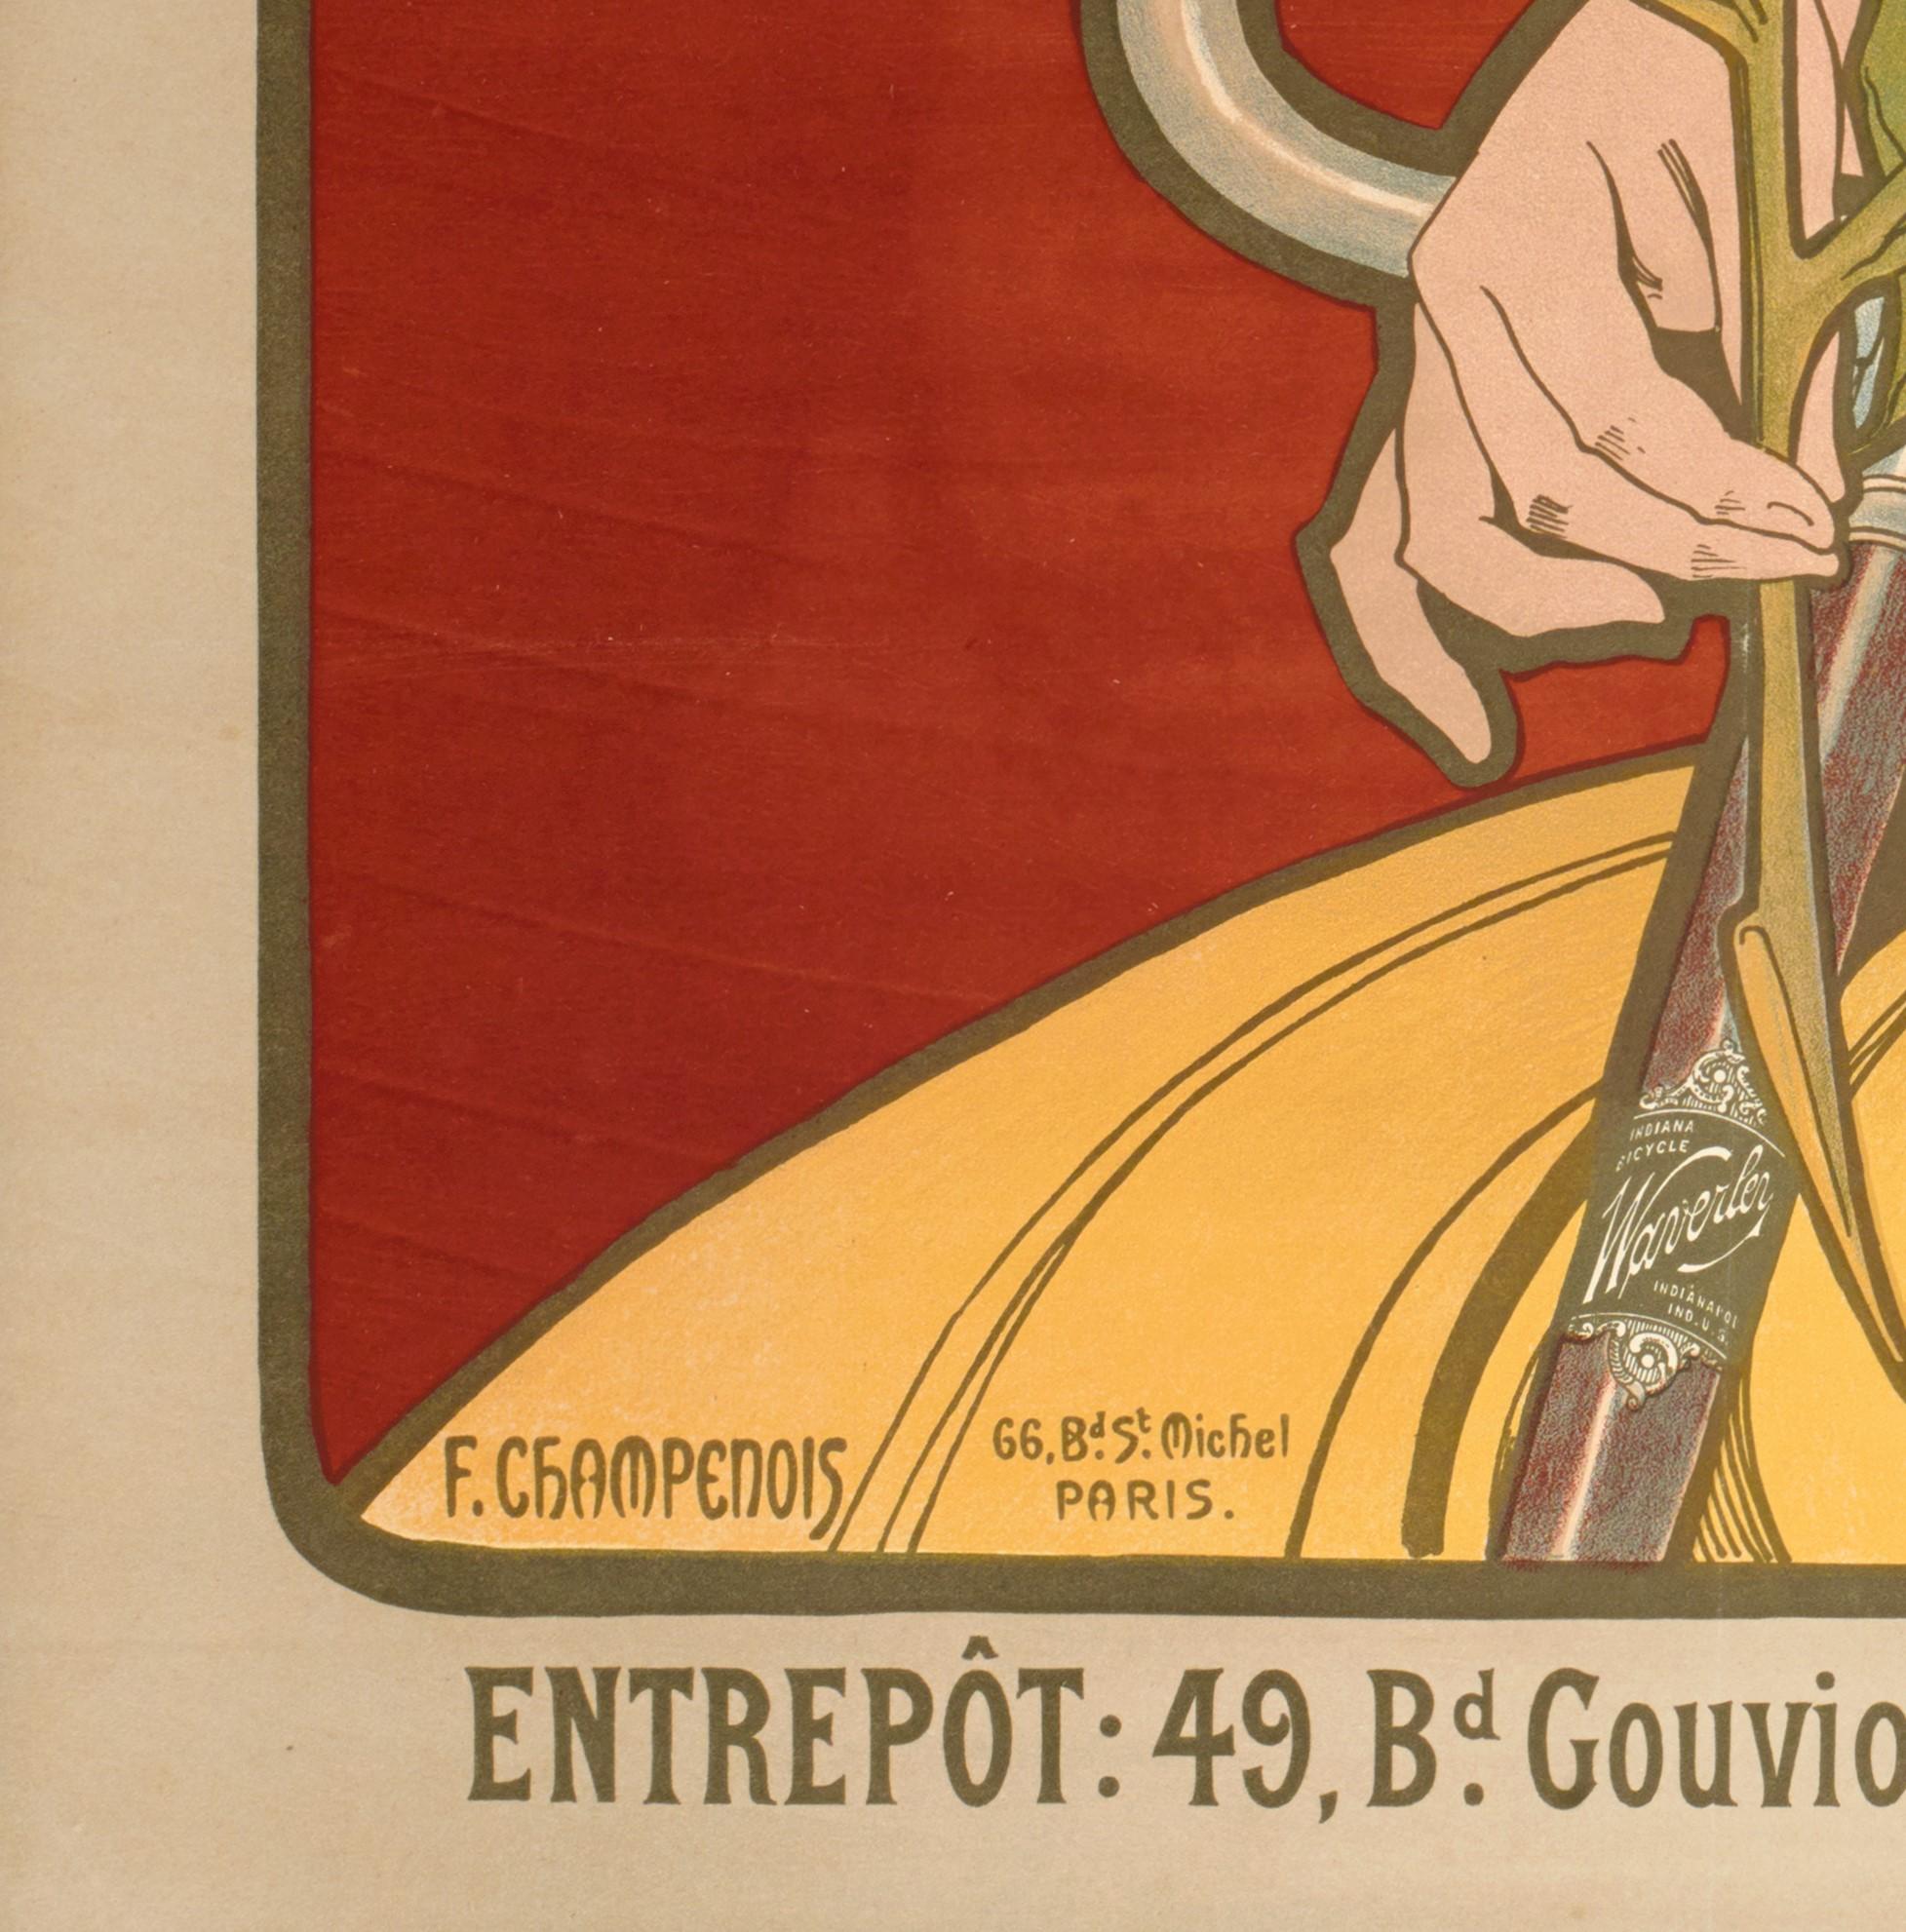 Original Jugendstil Vintage Poster aus dem Jahr 1898 von Alphonse Mucha.

Künstler: Alphonse Mucha (1860-1939)
Titel: Waverley Fahrräder
Datum: 1898
Größe (B x H): 33,9 x 42,9 Zoll / 86 x 109 cm
Druckerei: F. Champenois, 66 Bd St. Michel,